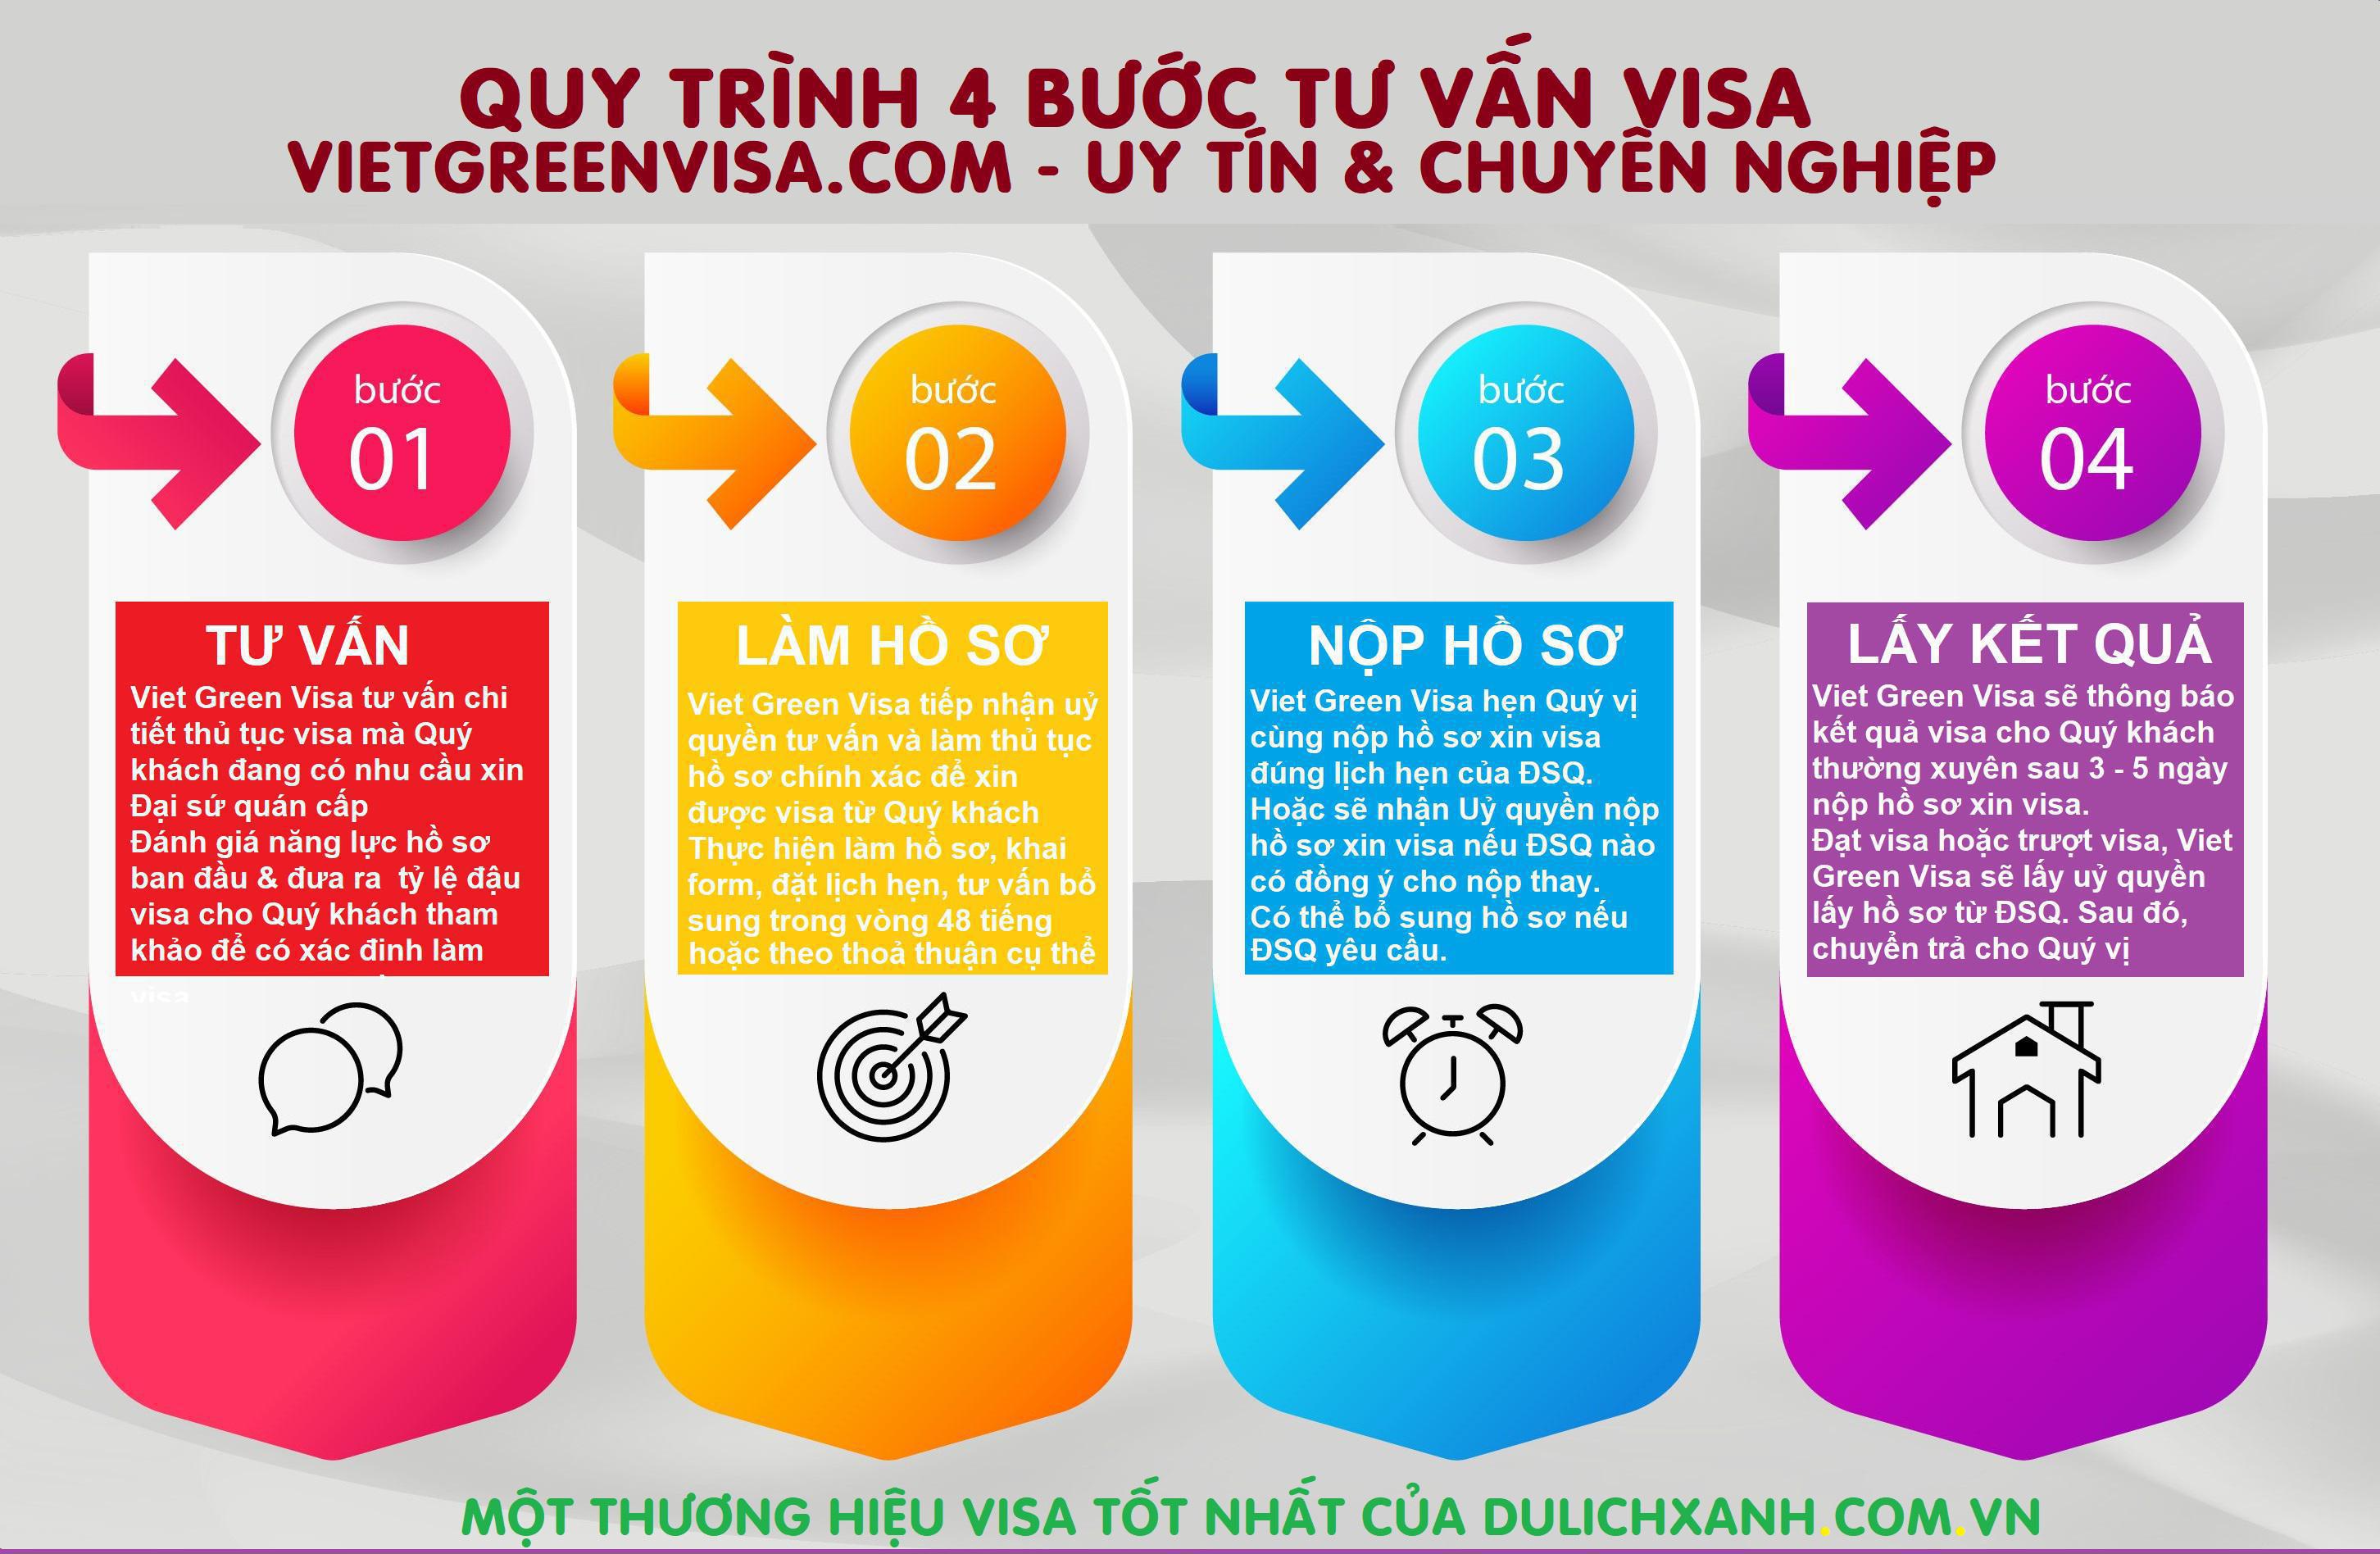 Viet Green Visa, dịch vụ visa tại Hà Nội, Top 5 công ty dịch vụ visa, Visa Hà Nội